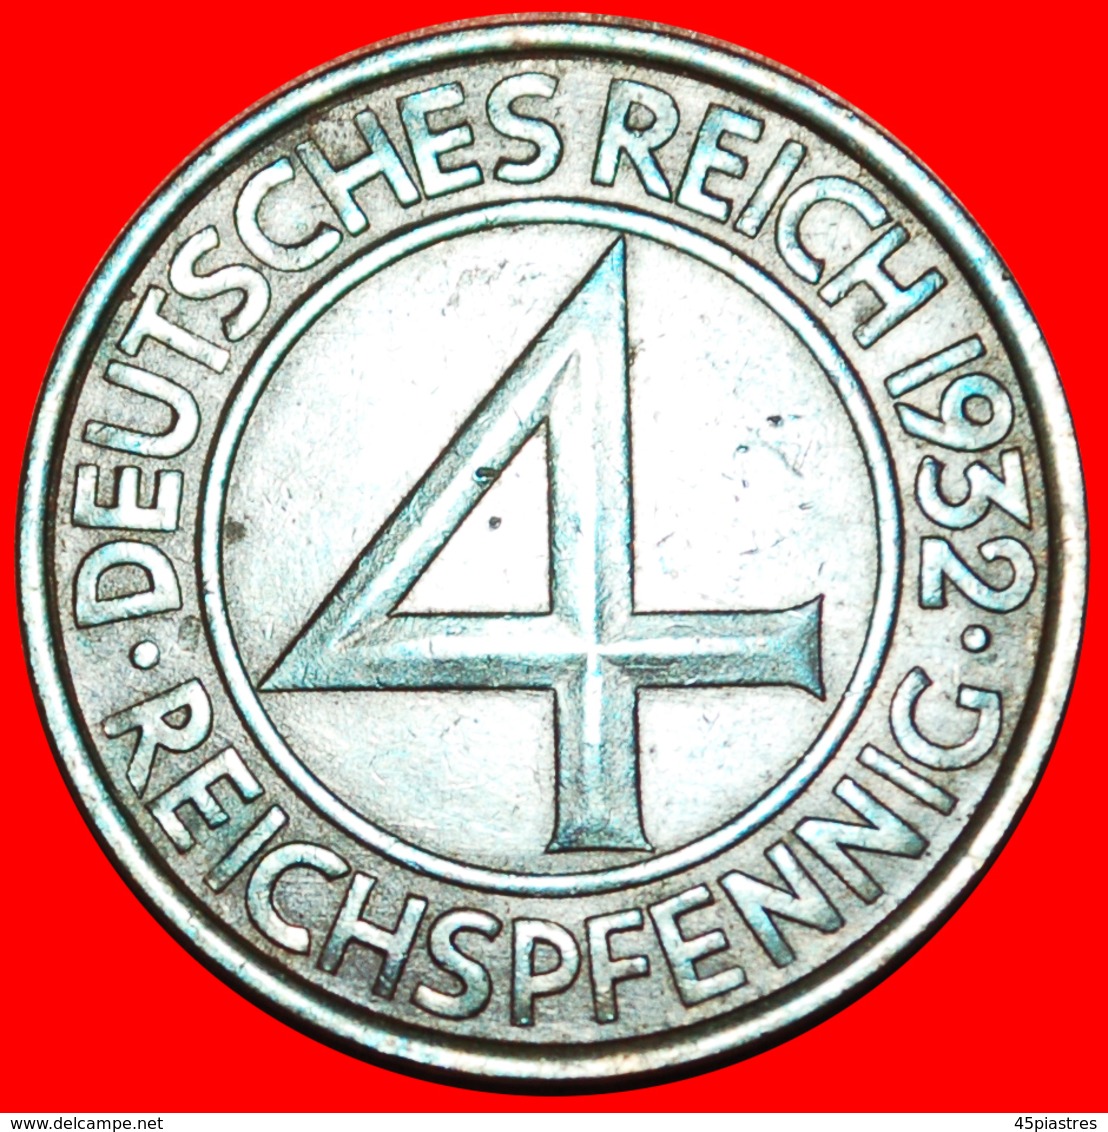 + RARE: GERMANY ★ 4 PFENNIG 1932E! LOW START ★ NO RESERVE! - 4 Reichspfennig